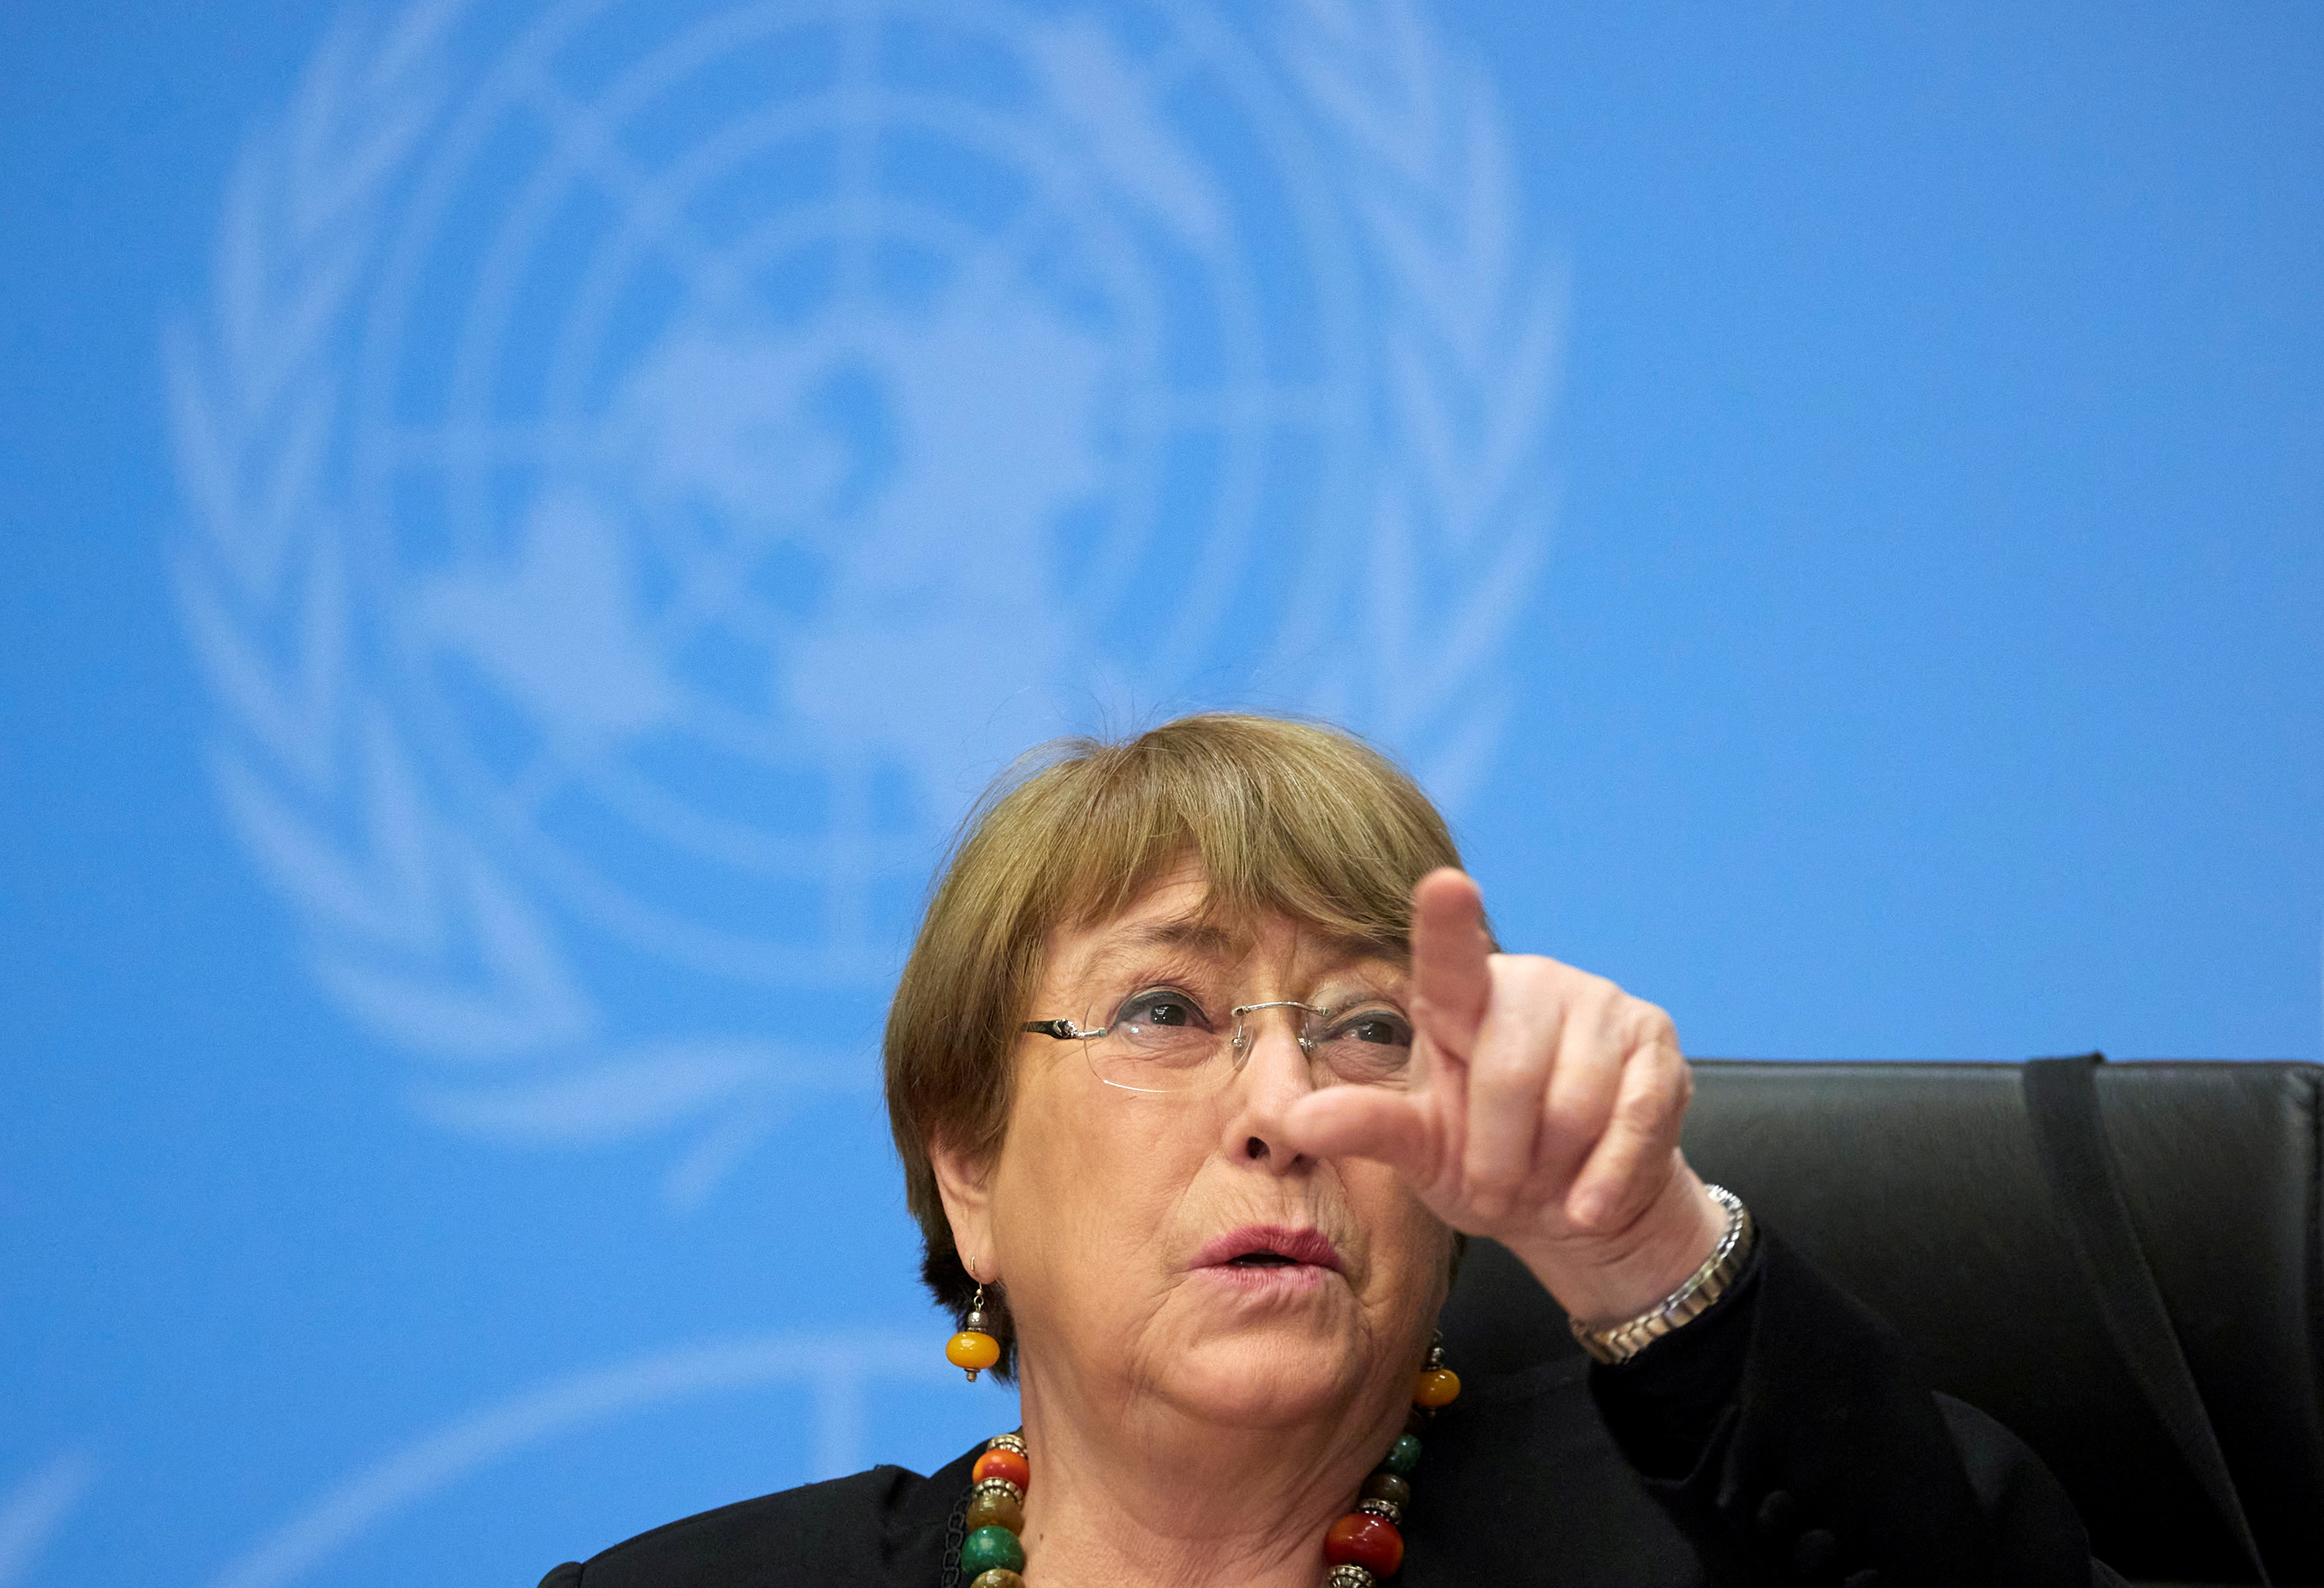 Michelle Bachelet condenó el uso de la violencia contra los manifestantes en Myanmar (REUTERS/Denis Balibouse)